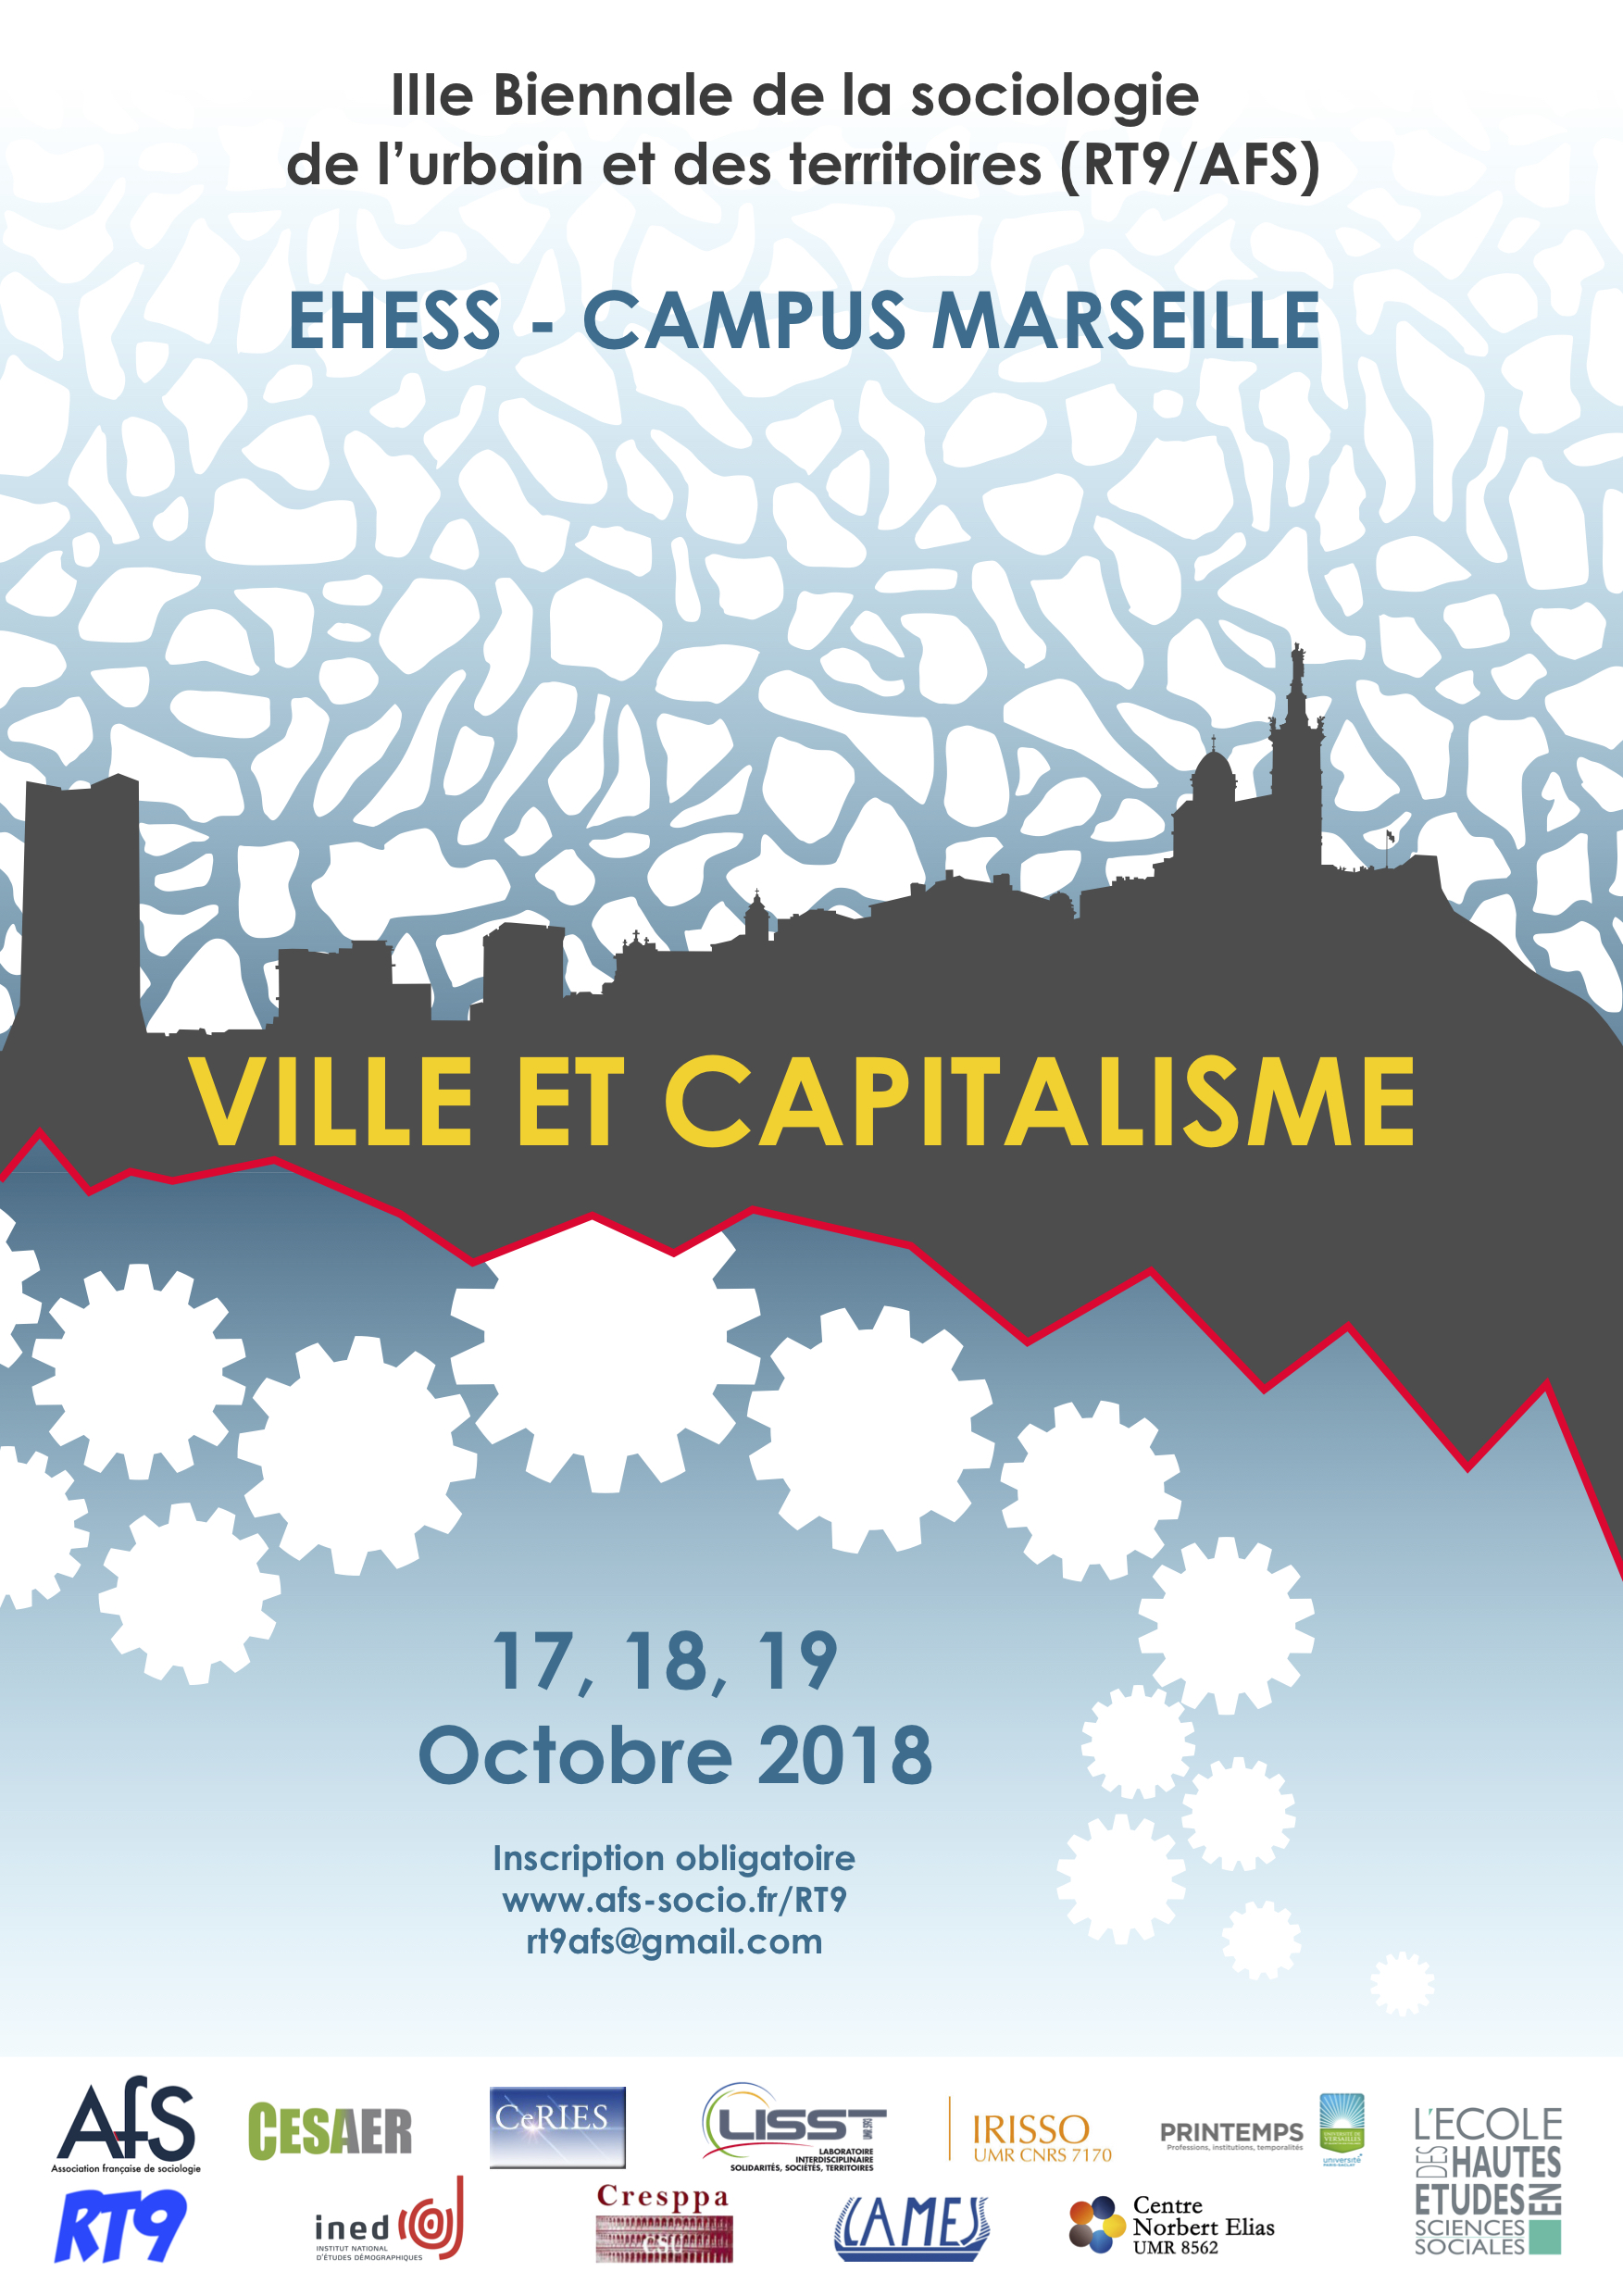 [Journées d’étude] IIIe biennale de la sociologie de l’urbain et des territoires (RT9/AFS), « Ville et capitalisme », EHESS Marseille, 17, 18 et 19 octobre 2018.